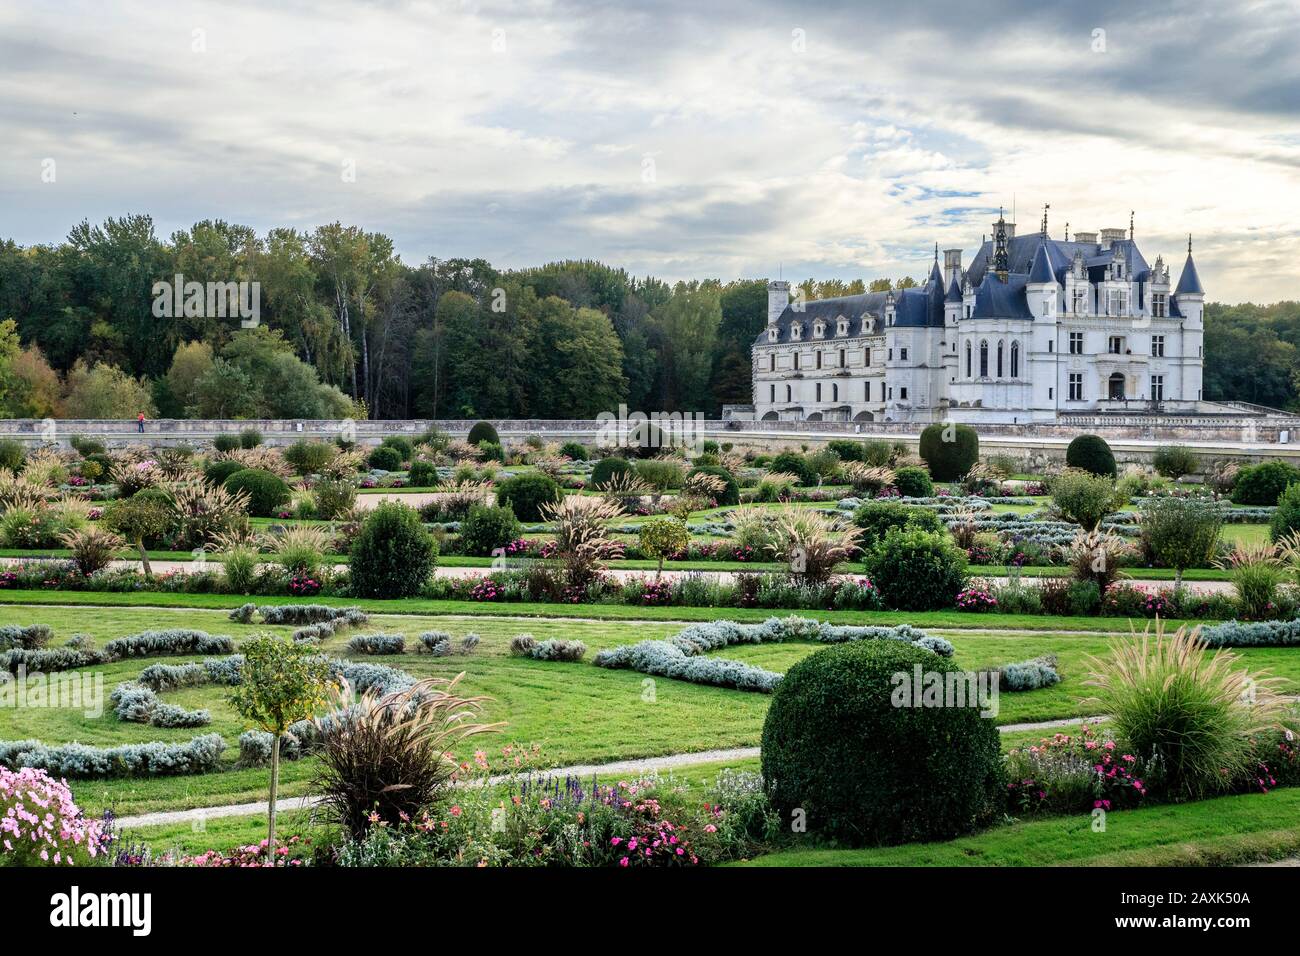 Francia, Indre et Loire, Valle della Loira dichiarata Patrimonio Mondiale dall'UNESCO, Chenonceaux, Chateau de Chenonceau Parco e Giardini, castello e il Jardin de Foto Stock